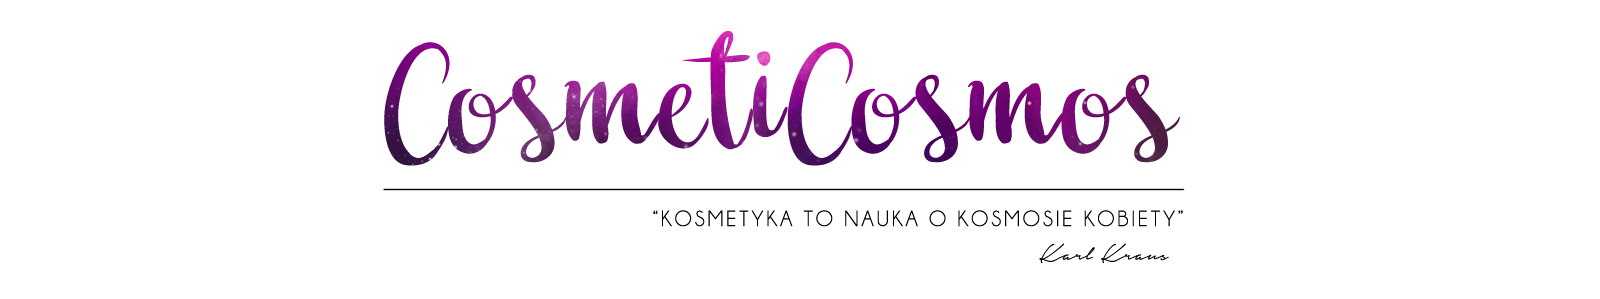 CosmetiCosmos - blog o kosmetykach naturalnych, pielęgnacji i less waste